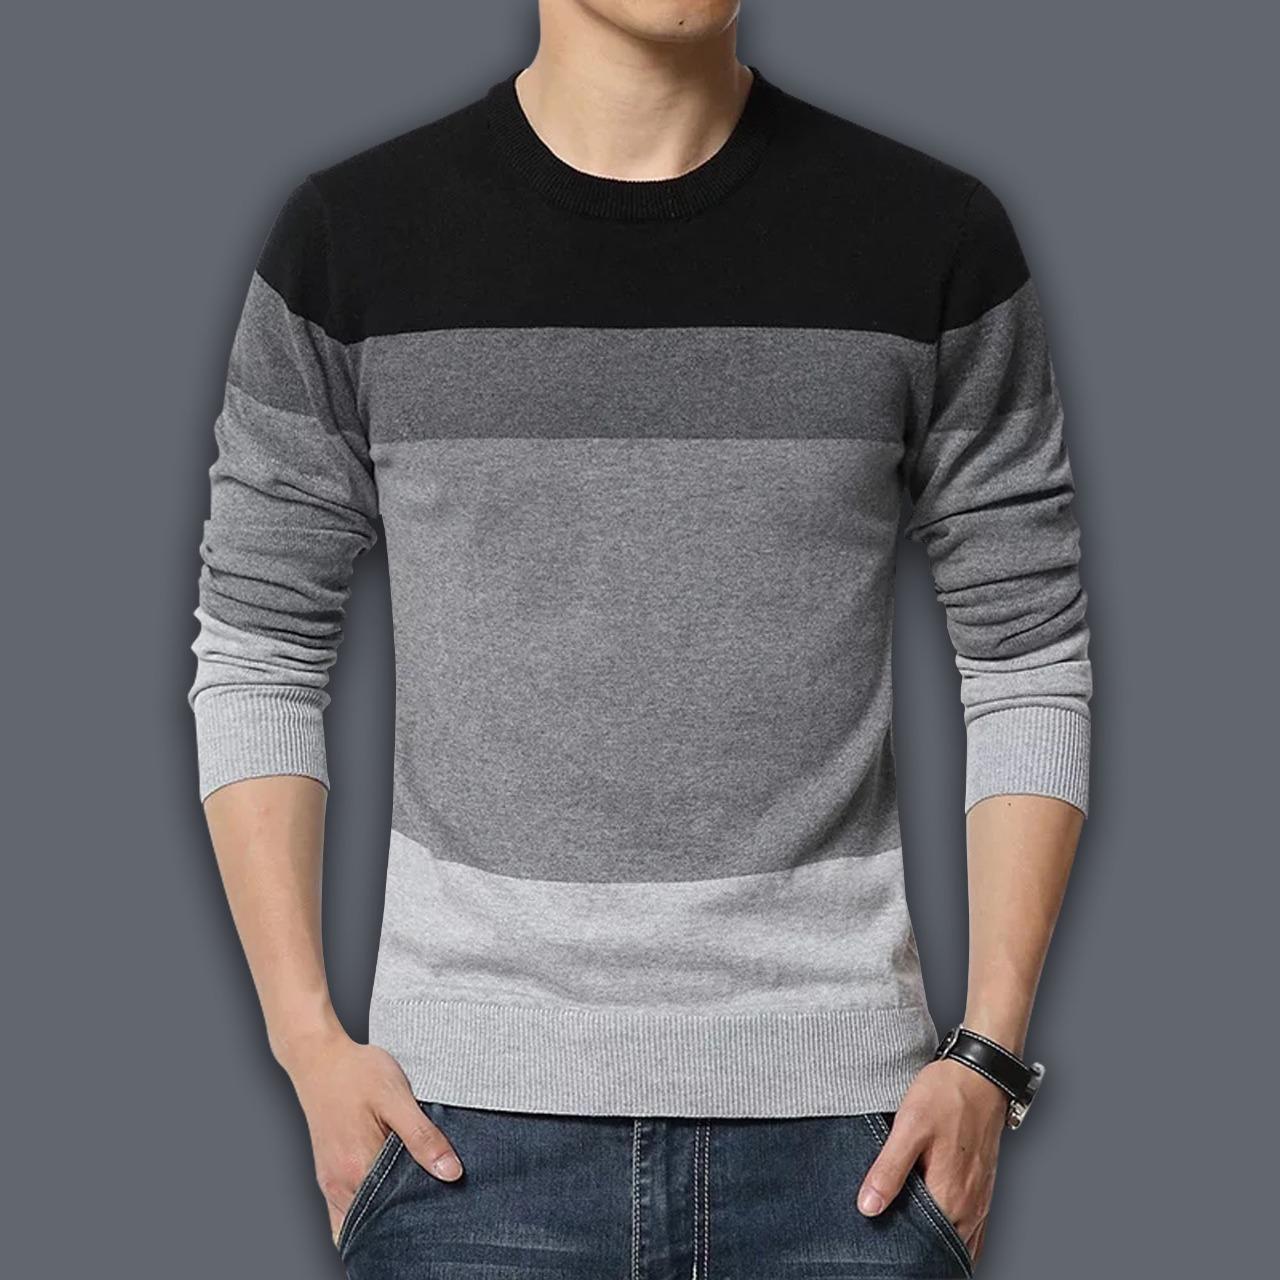 Cotton Full Sleeve Sweater for Men - GMS001